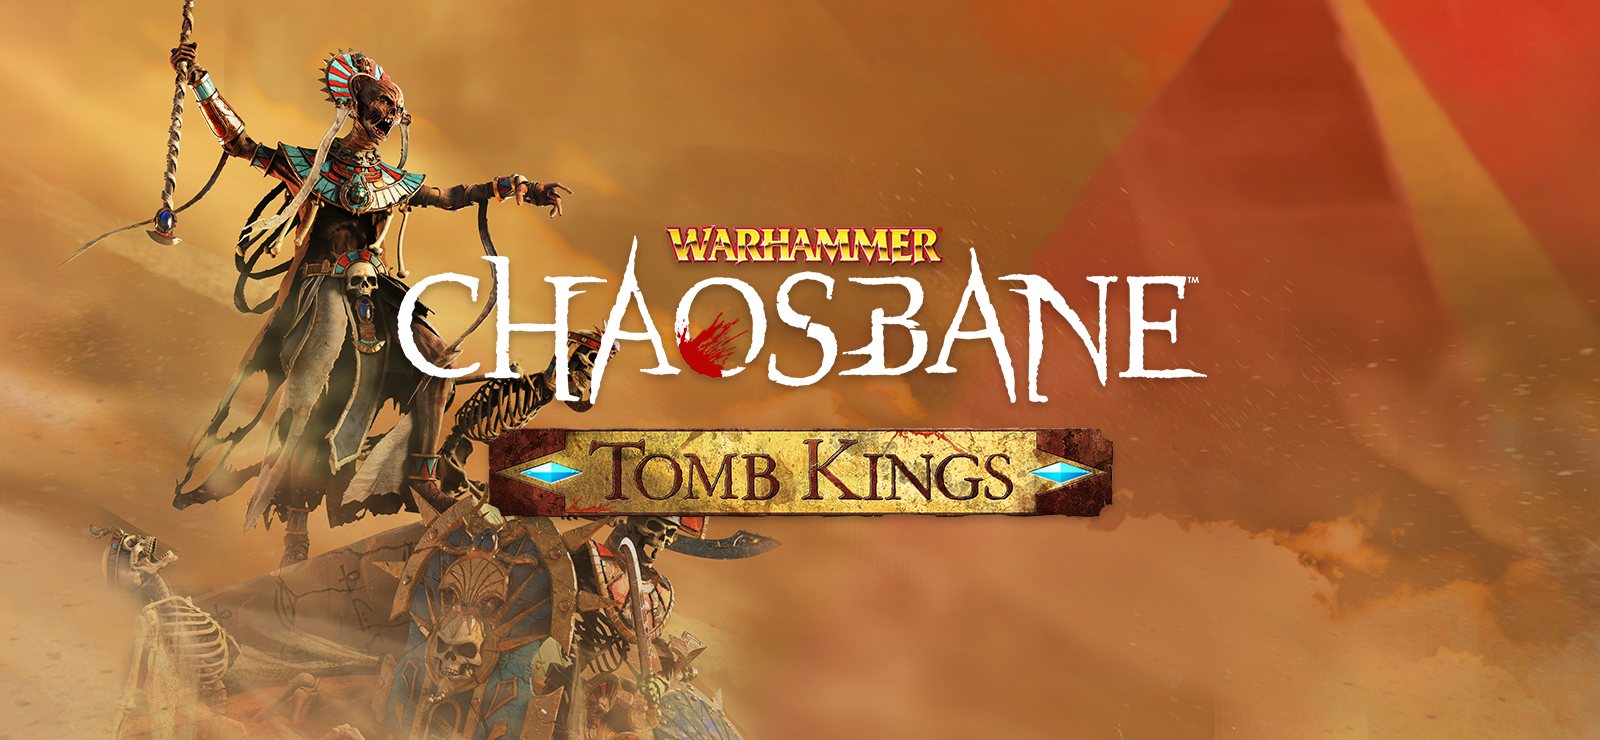 Warhammer: Chaosbane - Tomb Kings DLC